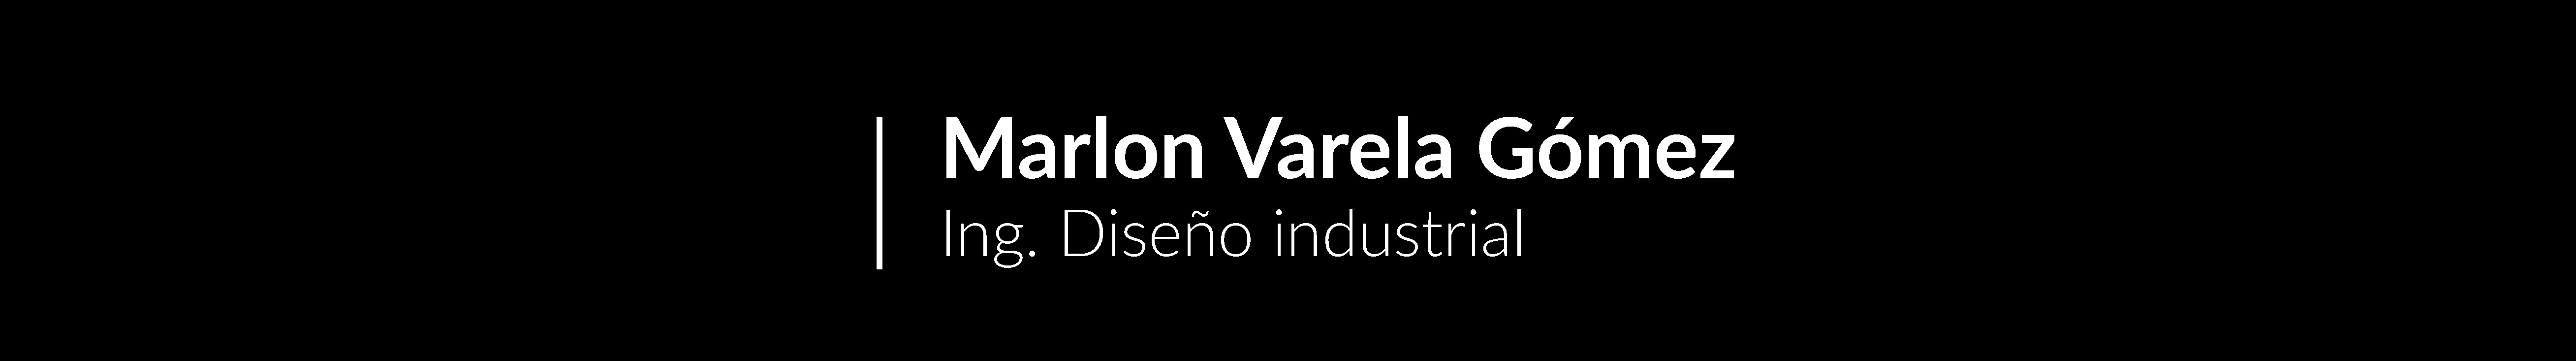 Marlon Varela Gómez's profile banner